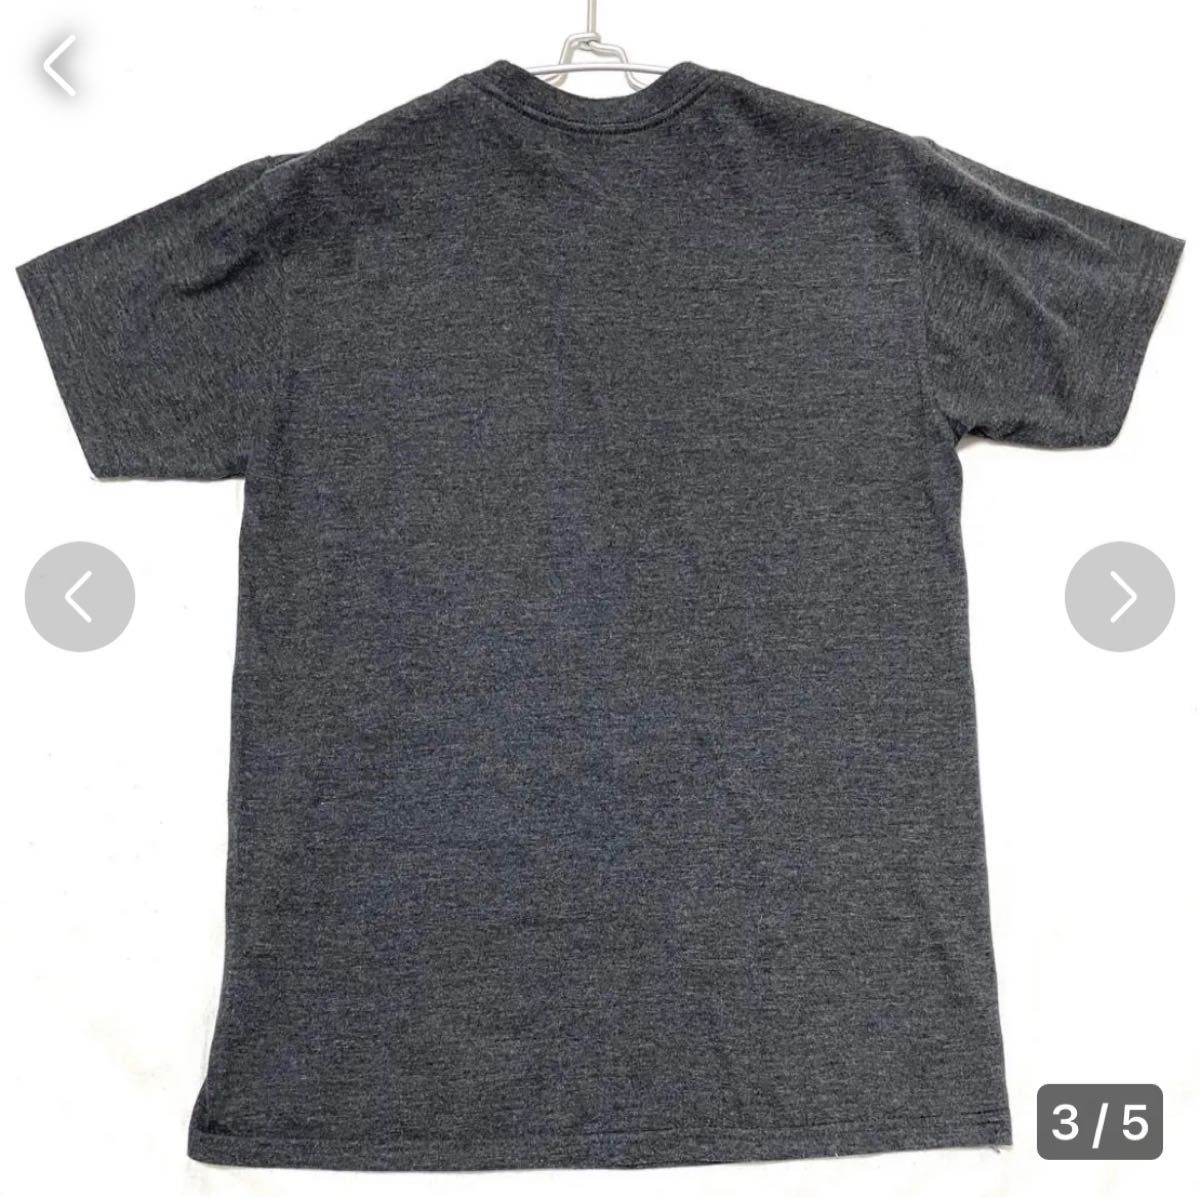 メンズ Tシャツ DC SHOES Tシャツ dcシューズtシャツ グレー S 匿名配送